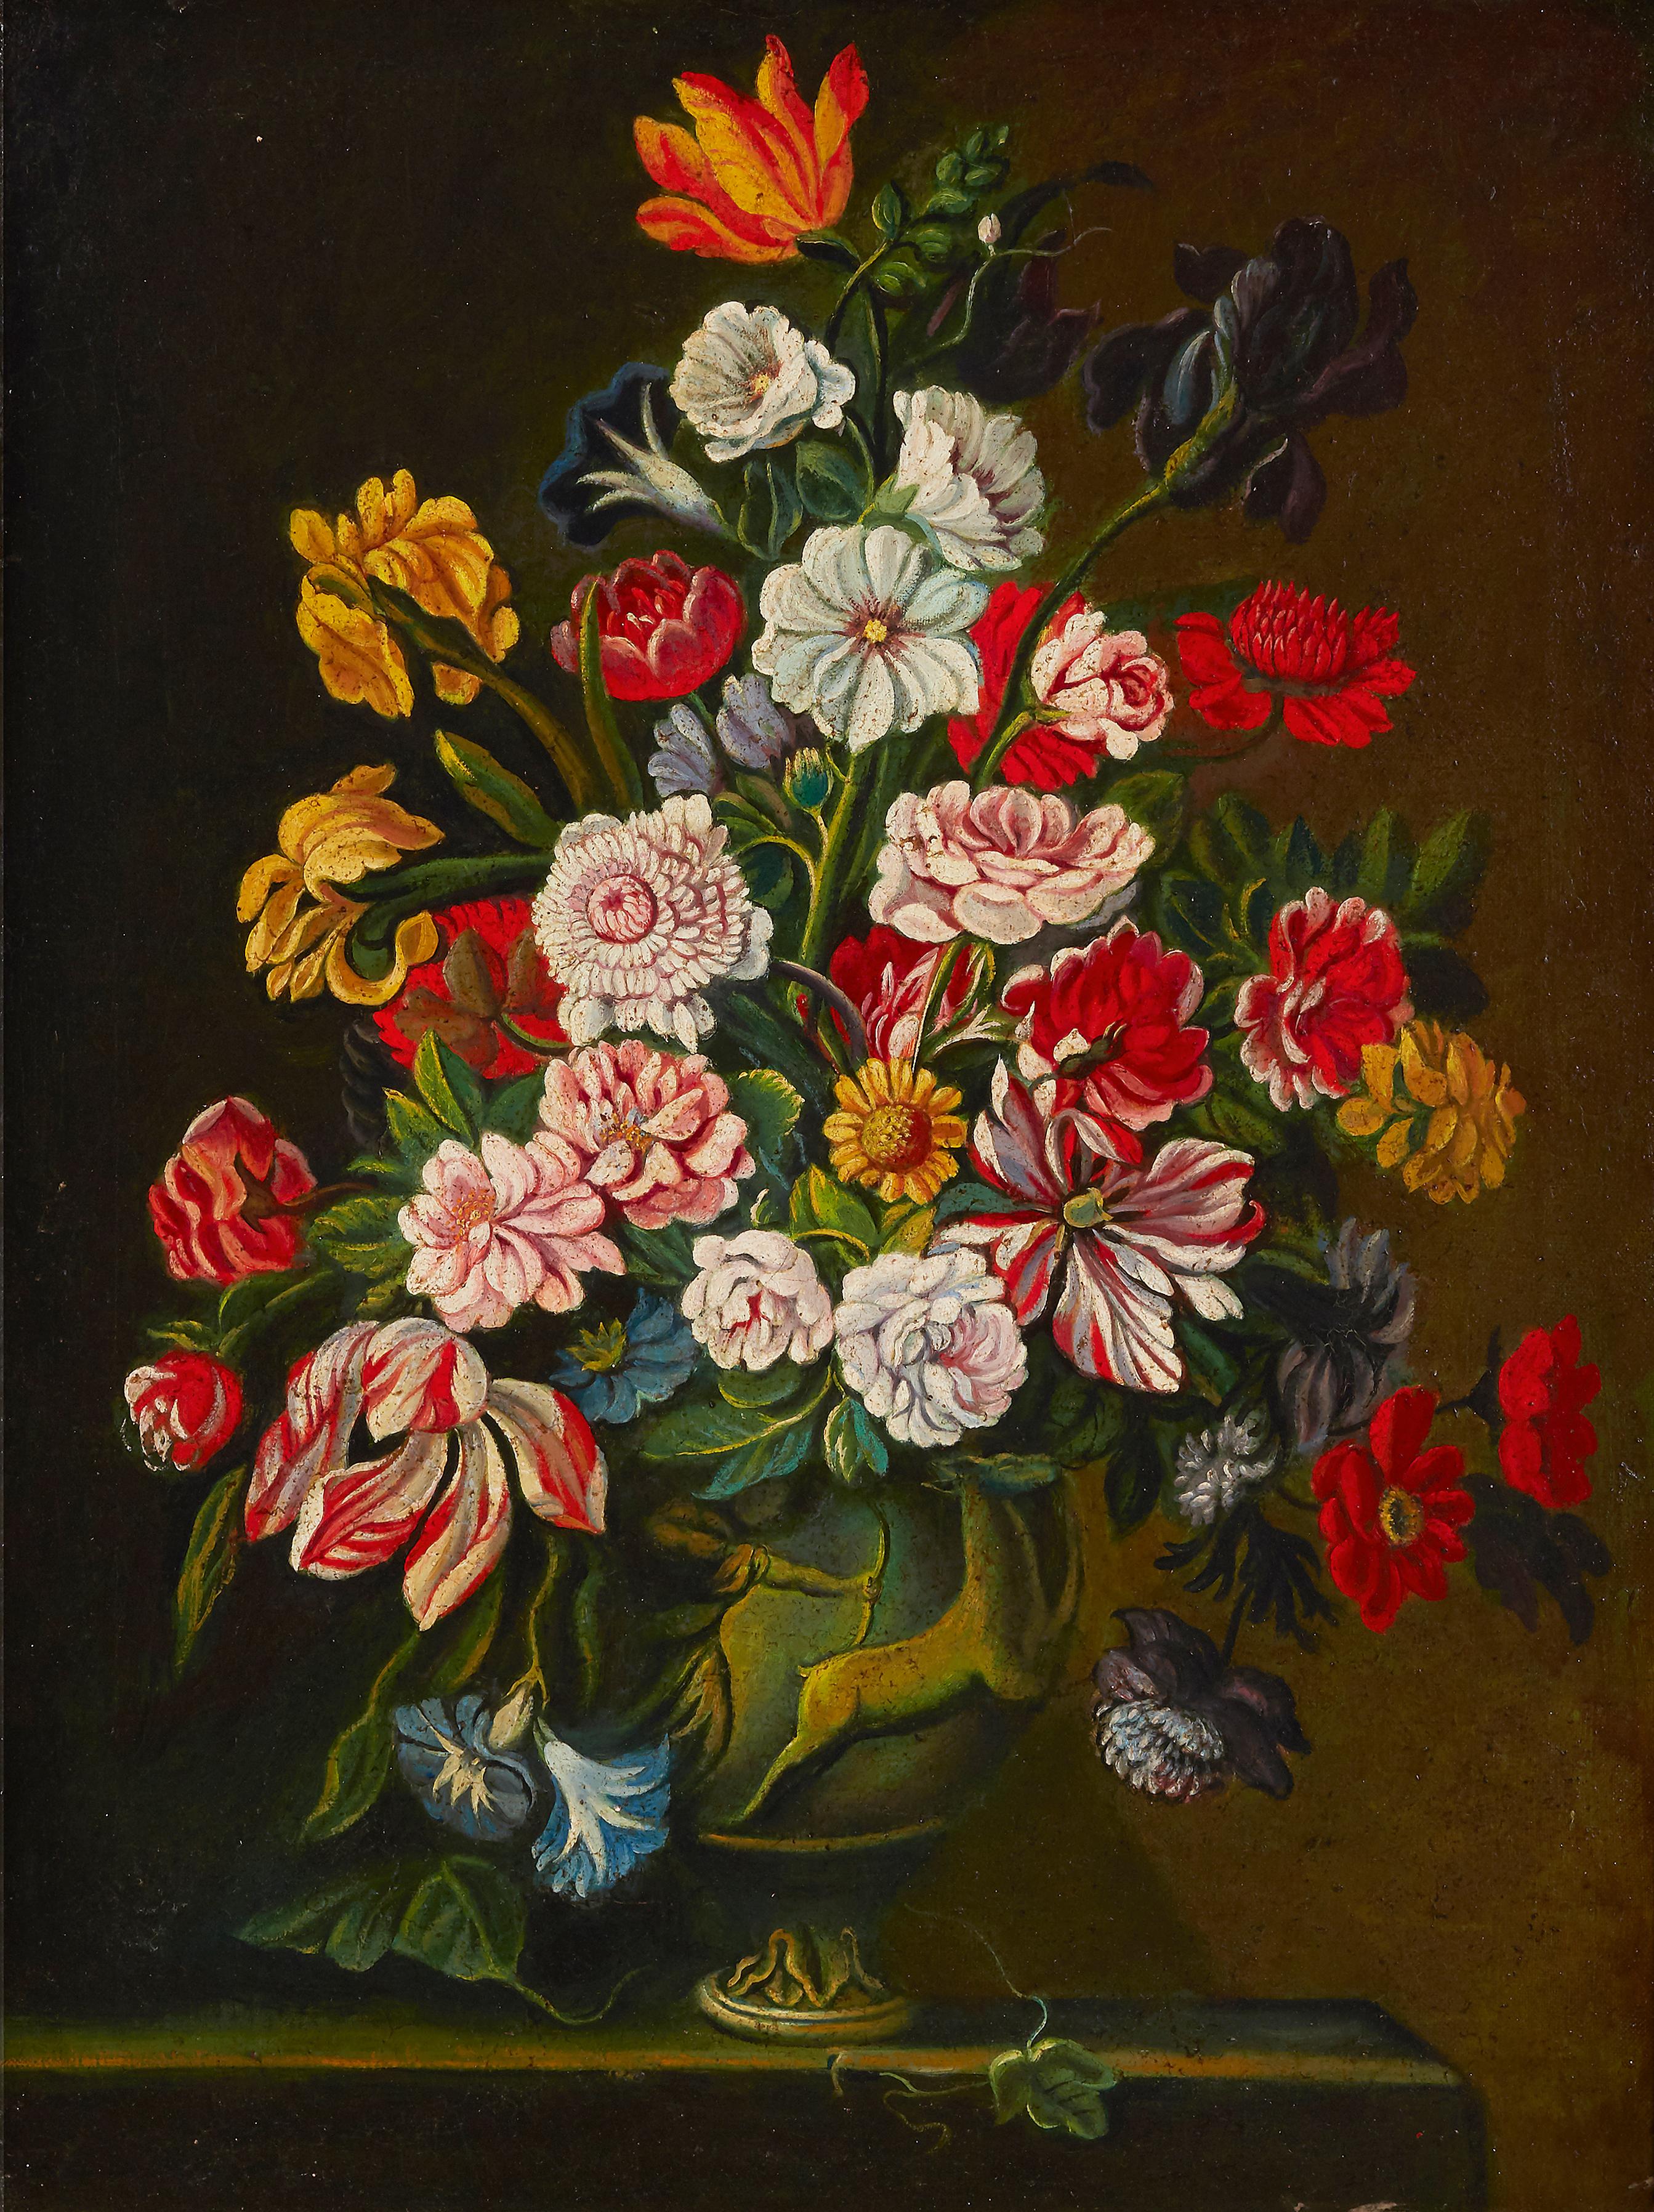 Großes Ölgemälde im spanischen Stil eines alten Meisters, verschnörkelte Blumen in Vase, Vase 